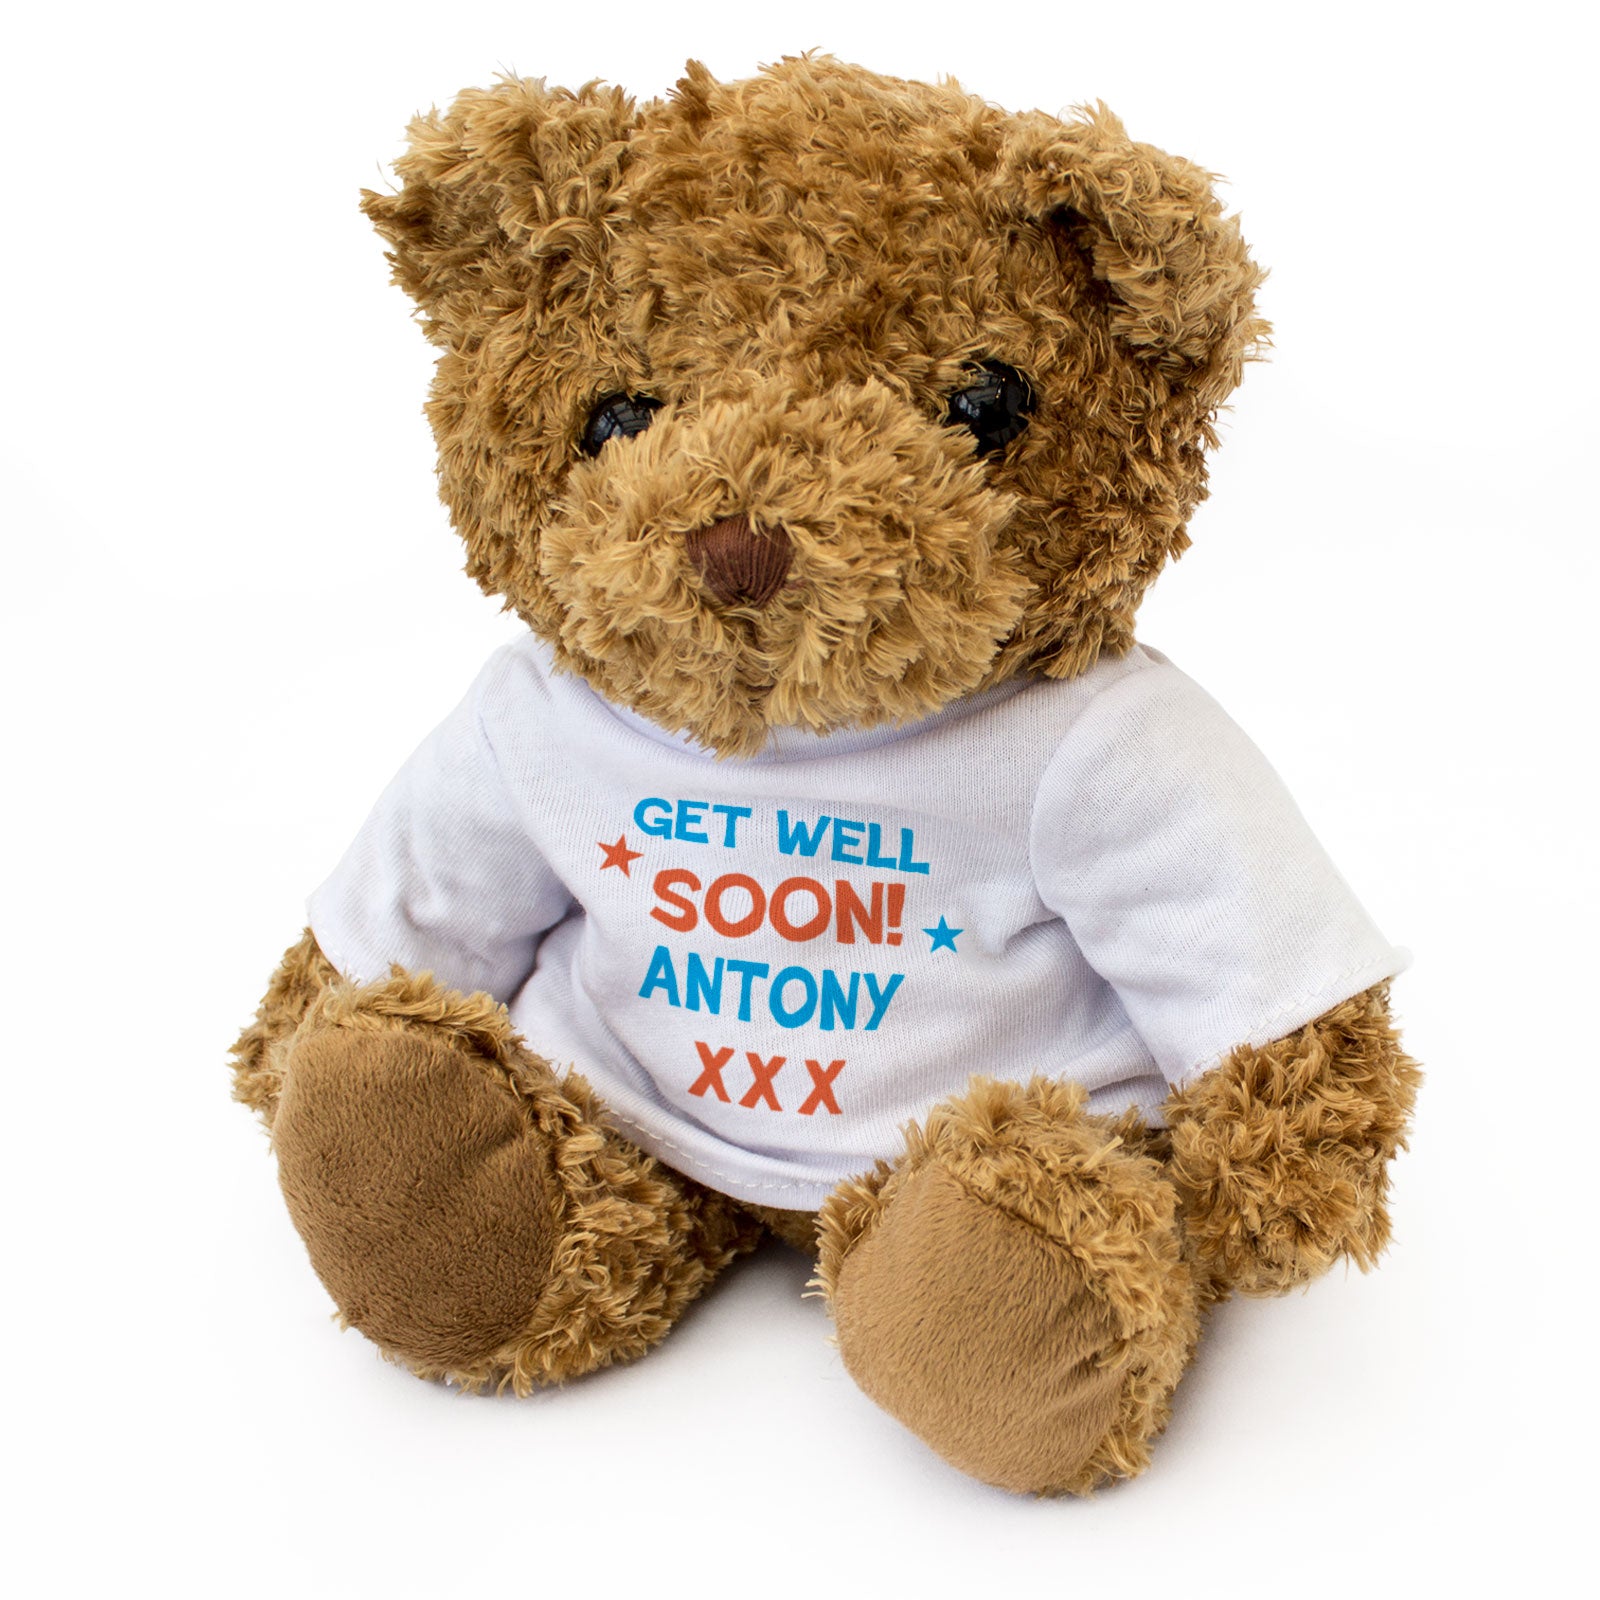 Get Well Soon Antony - Teddy Bear